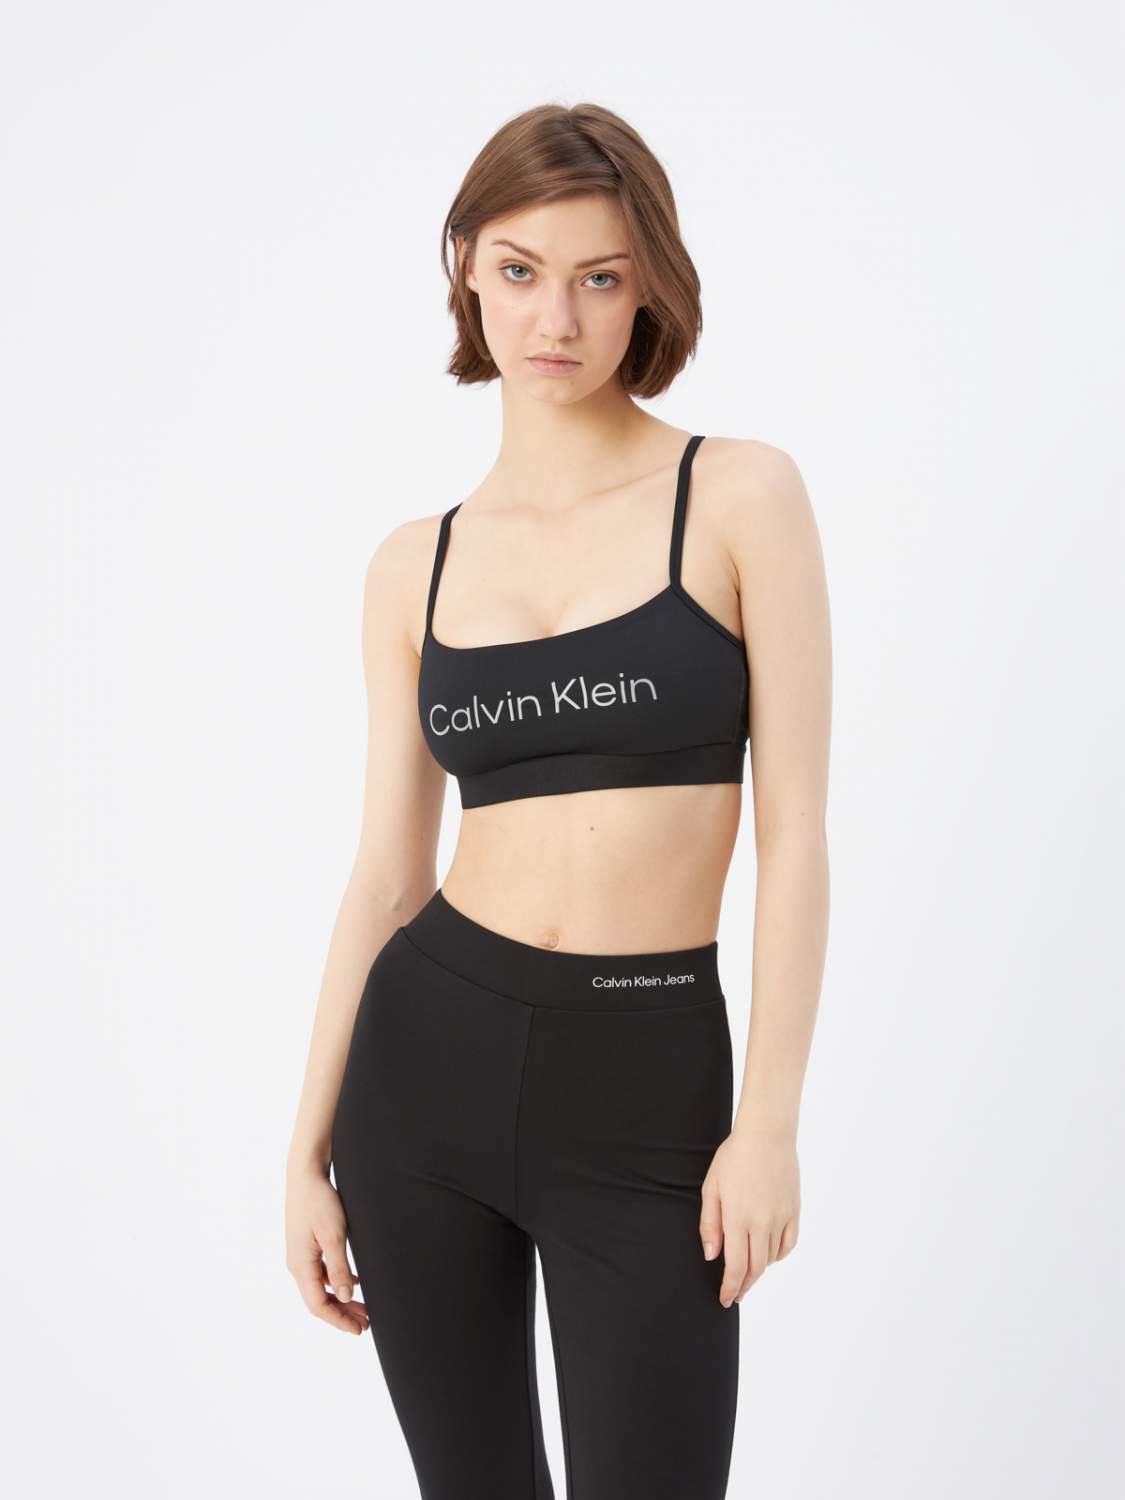 Женское нижнее белье Calvin Klein